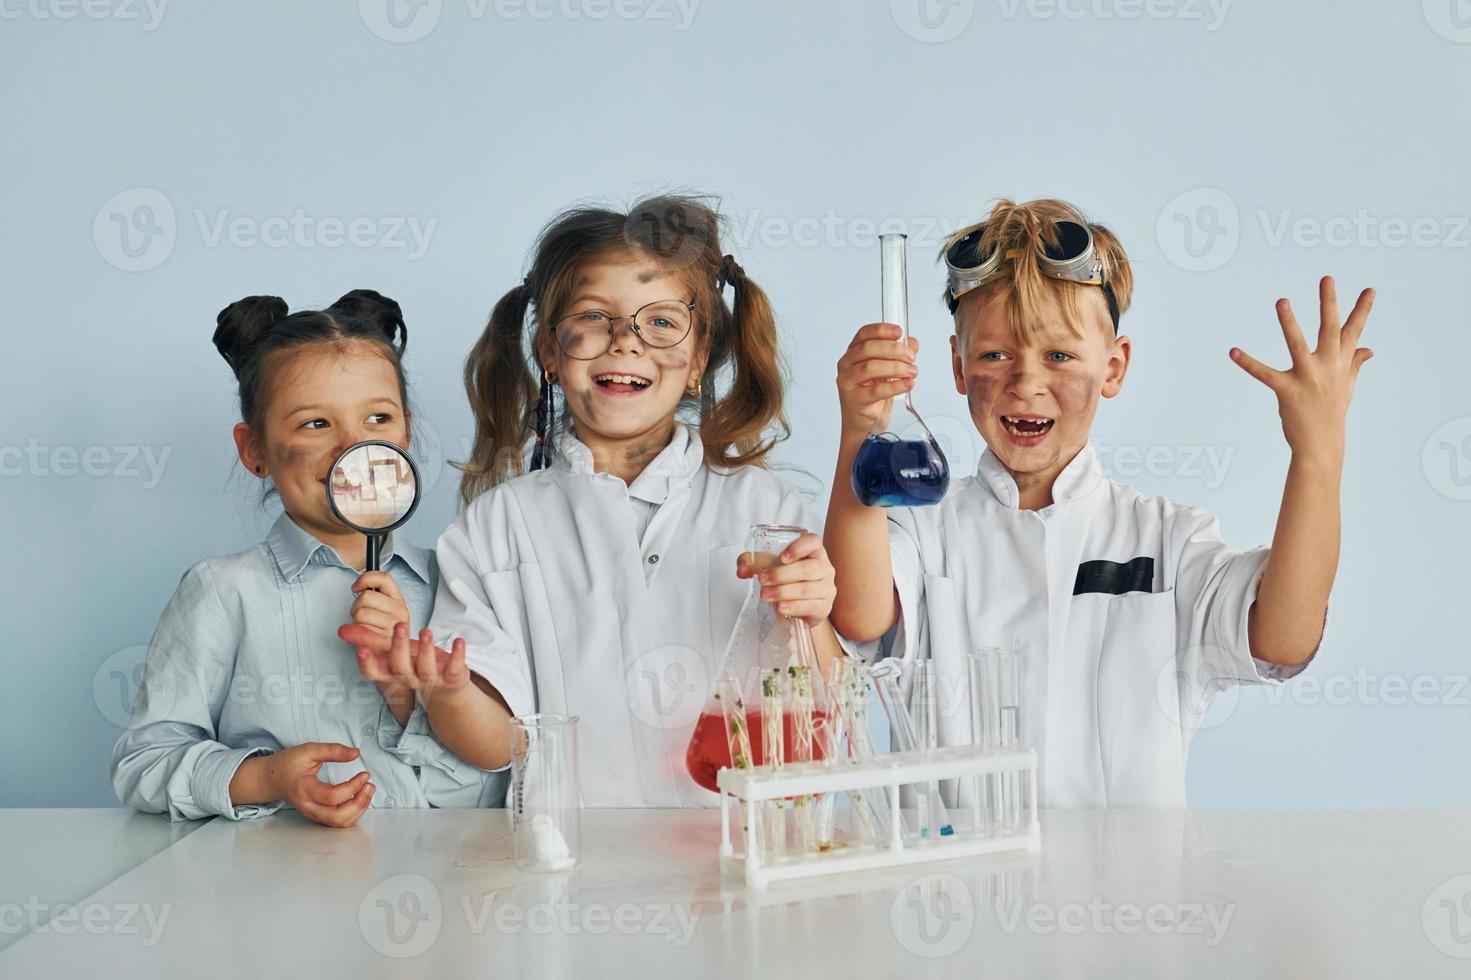 amigos felices sonriendo. los niños con batas blancas juegan a los científicos en el laboratorio usando equipos foto